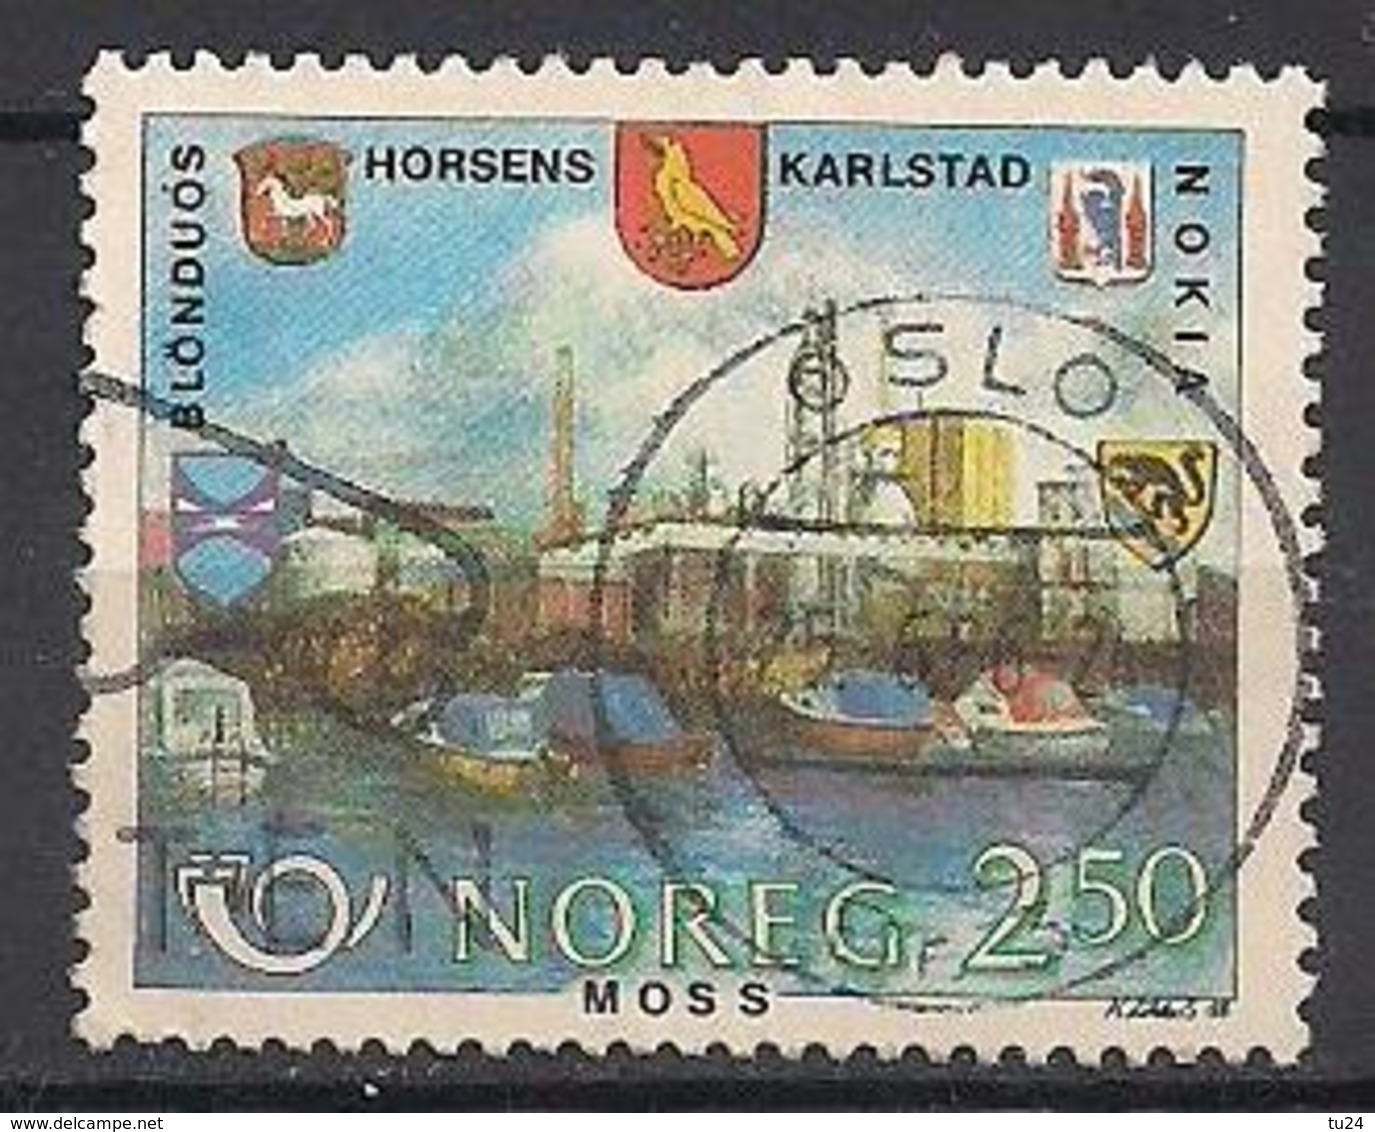 Norwegen  (1986)  Mi.Nr. 948  Gest. / Used  (1ah17) - Gebraucht